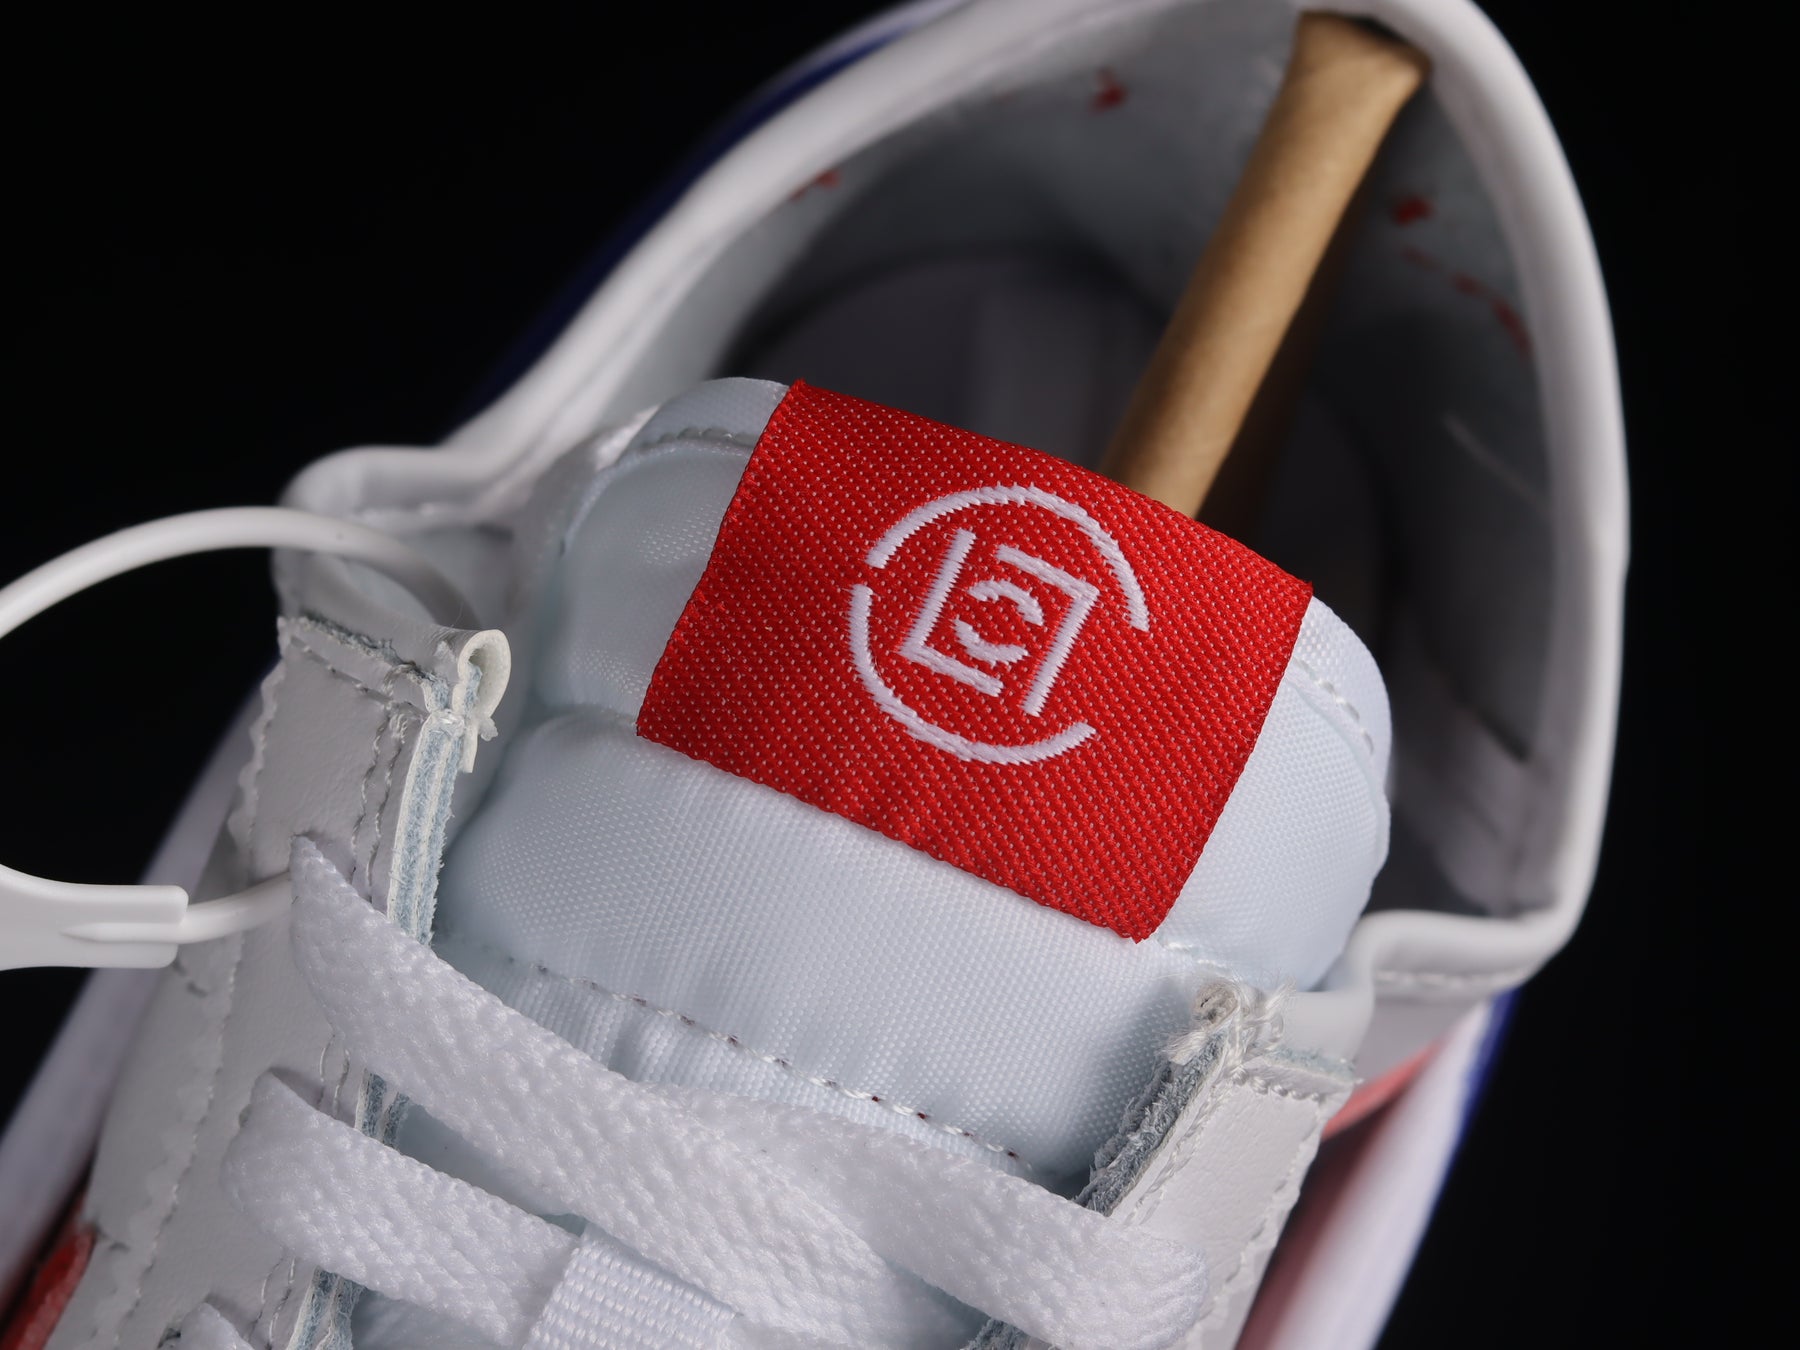 Clot x NikeMens Cortez - Bruce Lee White